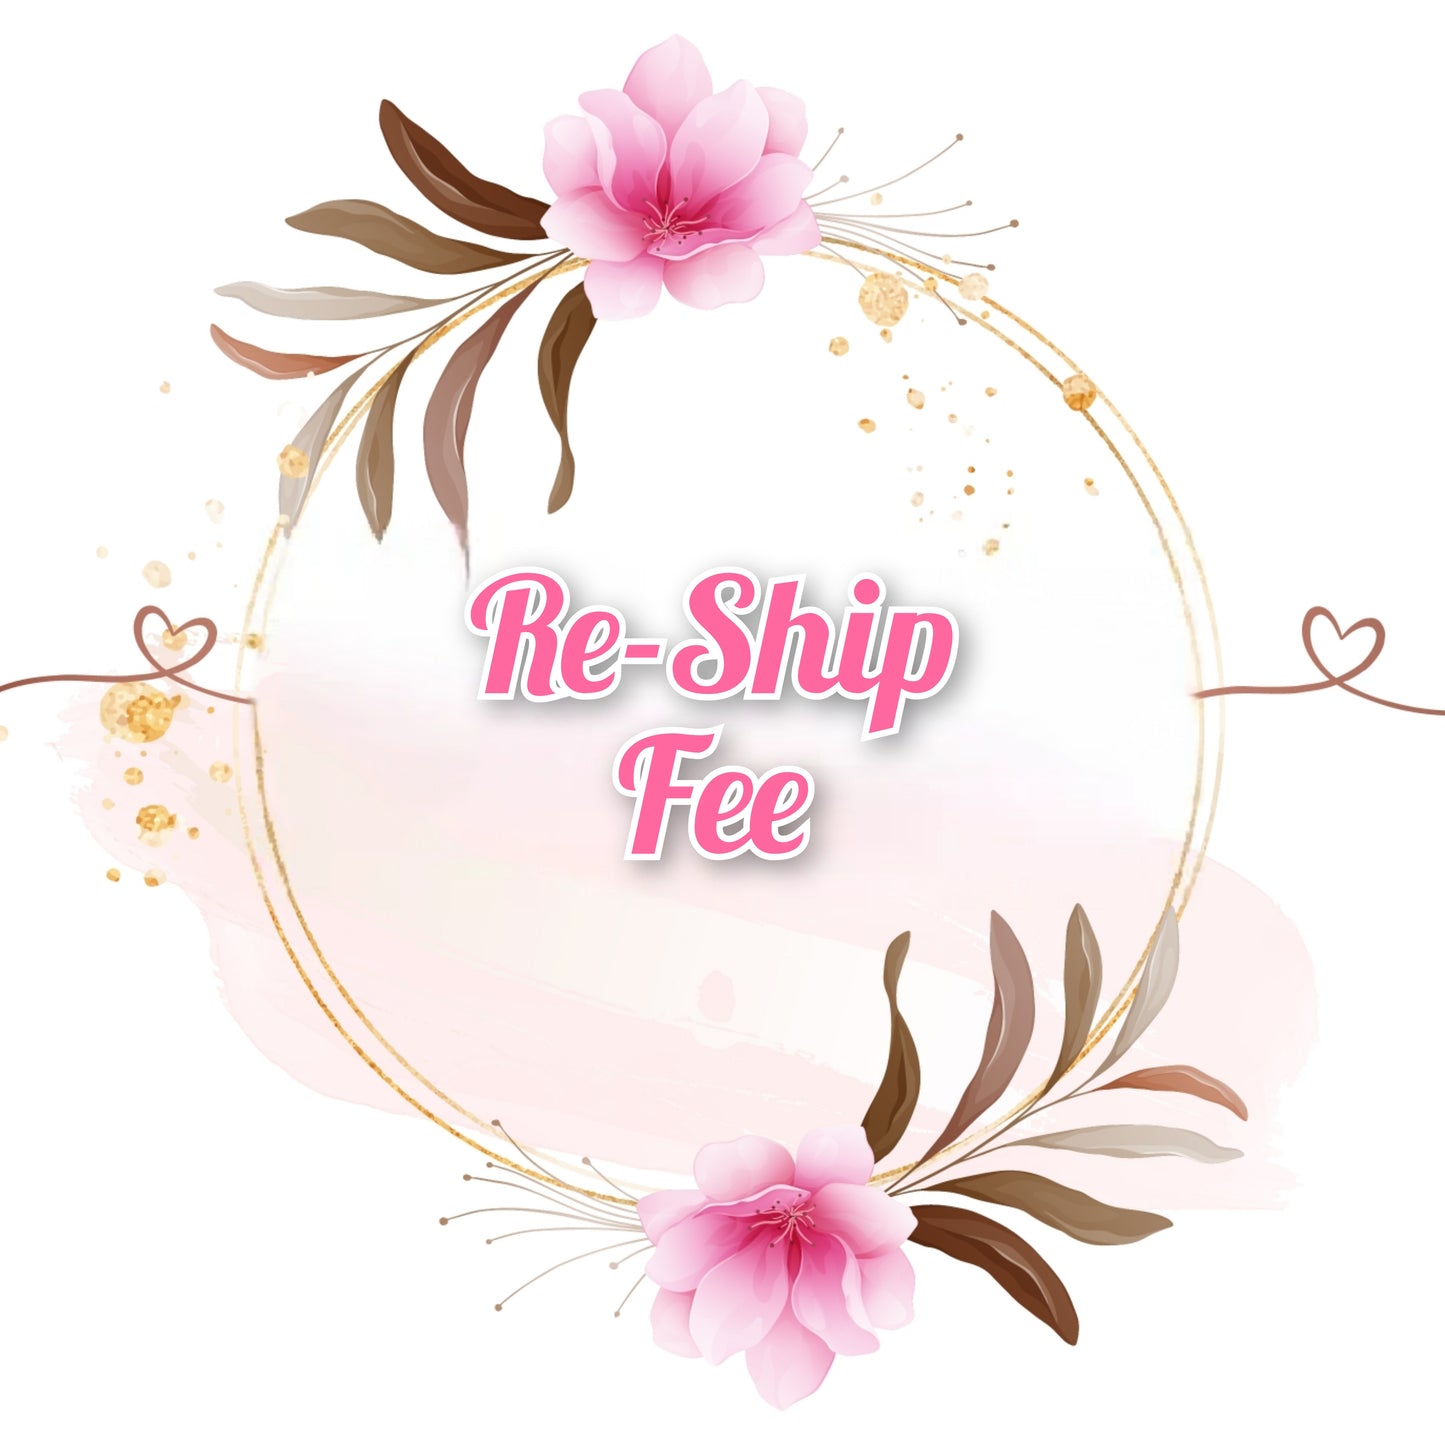 Re-Ship Fee